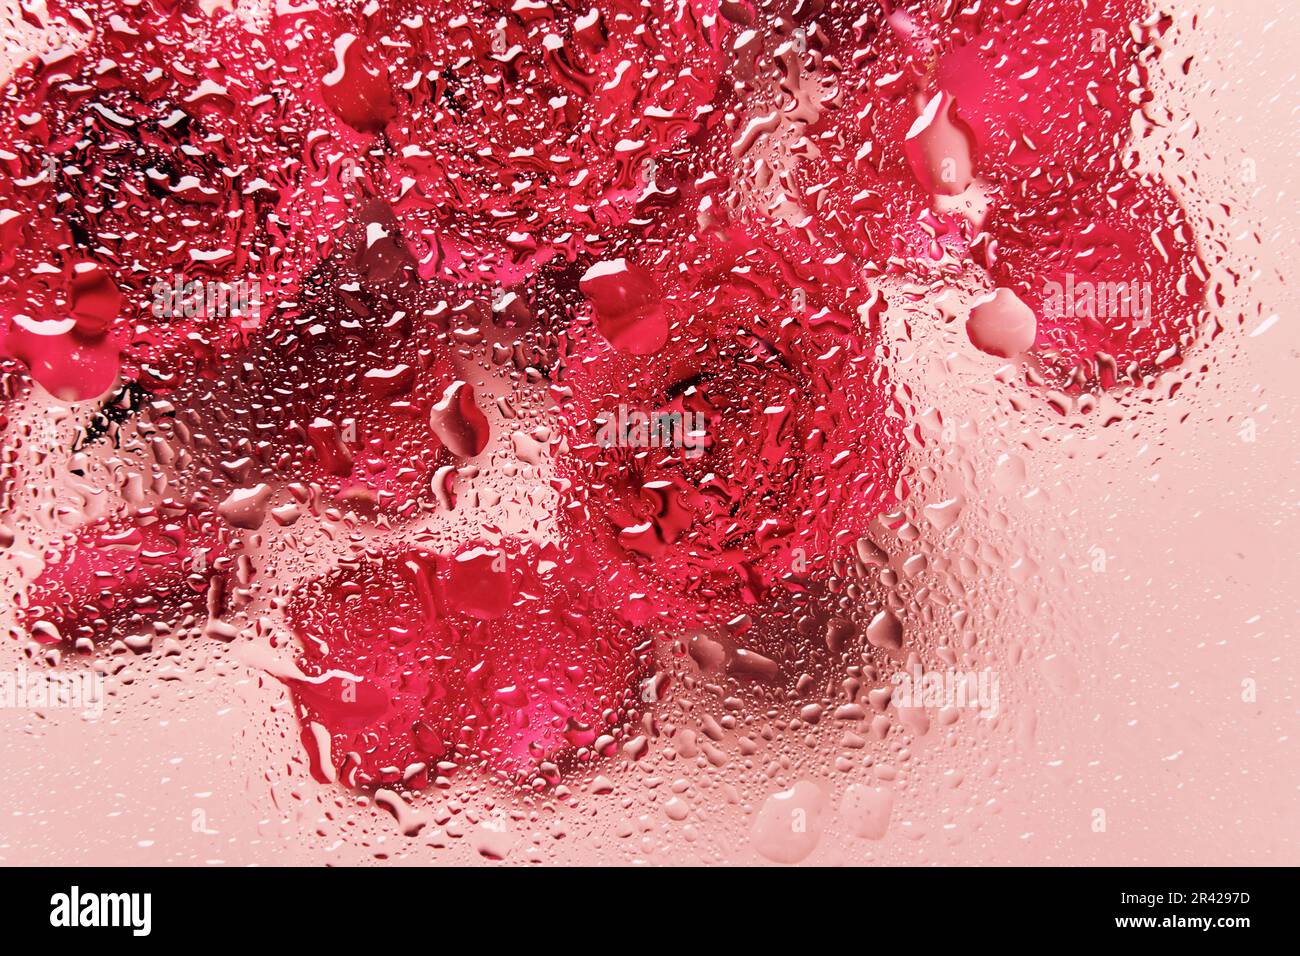 Fiori sotto vetro con gocce d'acqua. Rose rosse su sfondo rosa e motivo di blobs Foto Stock